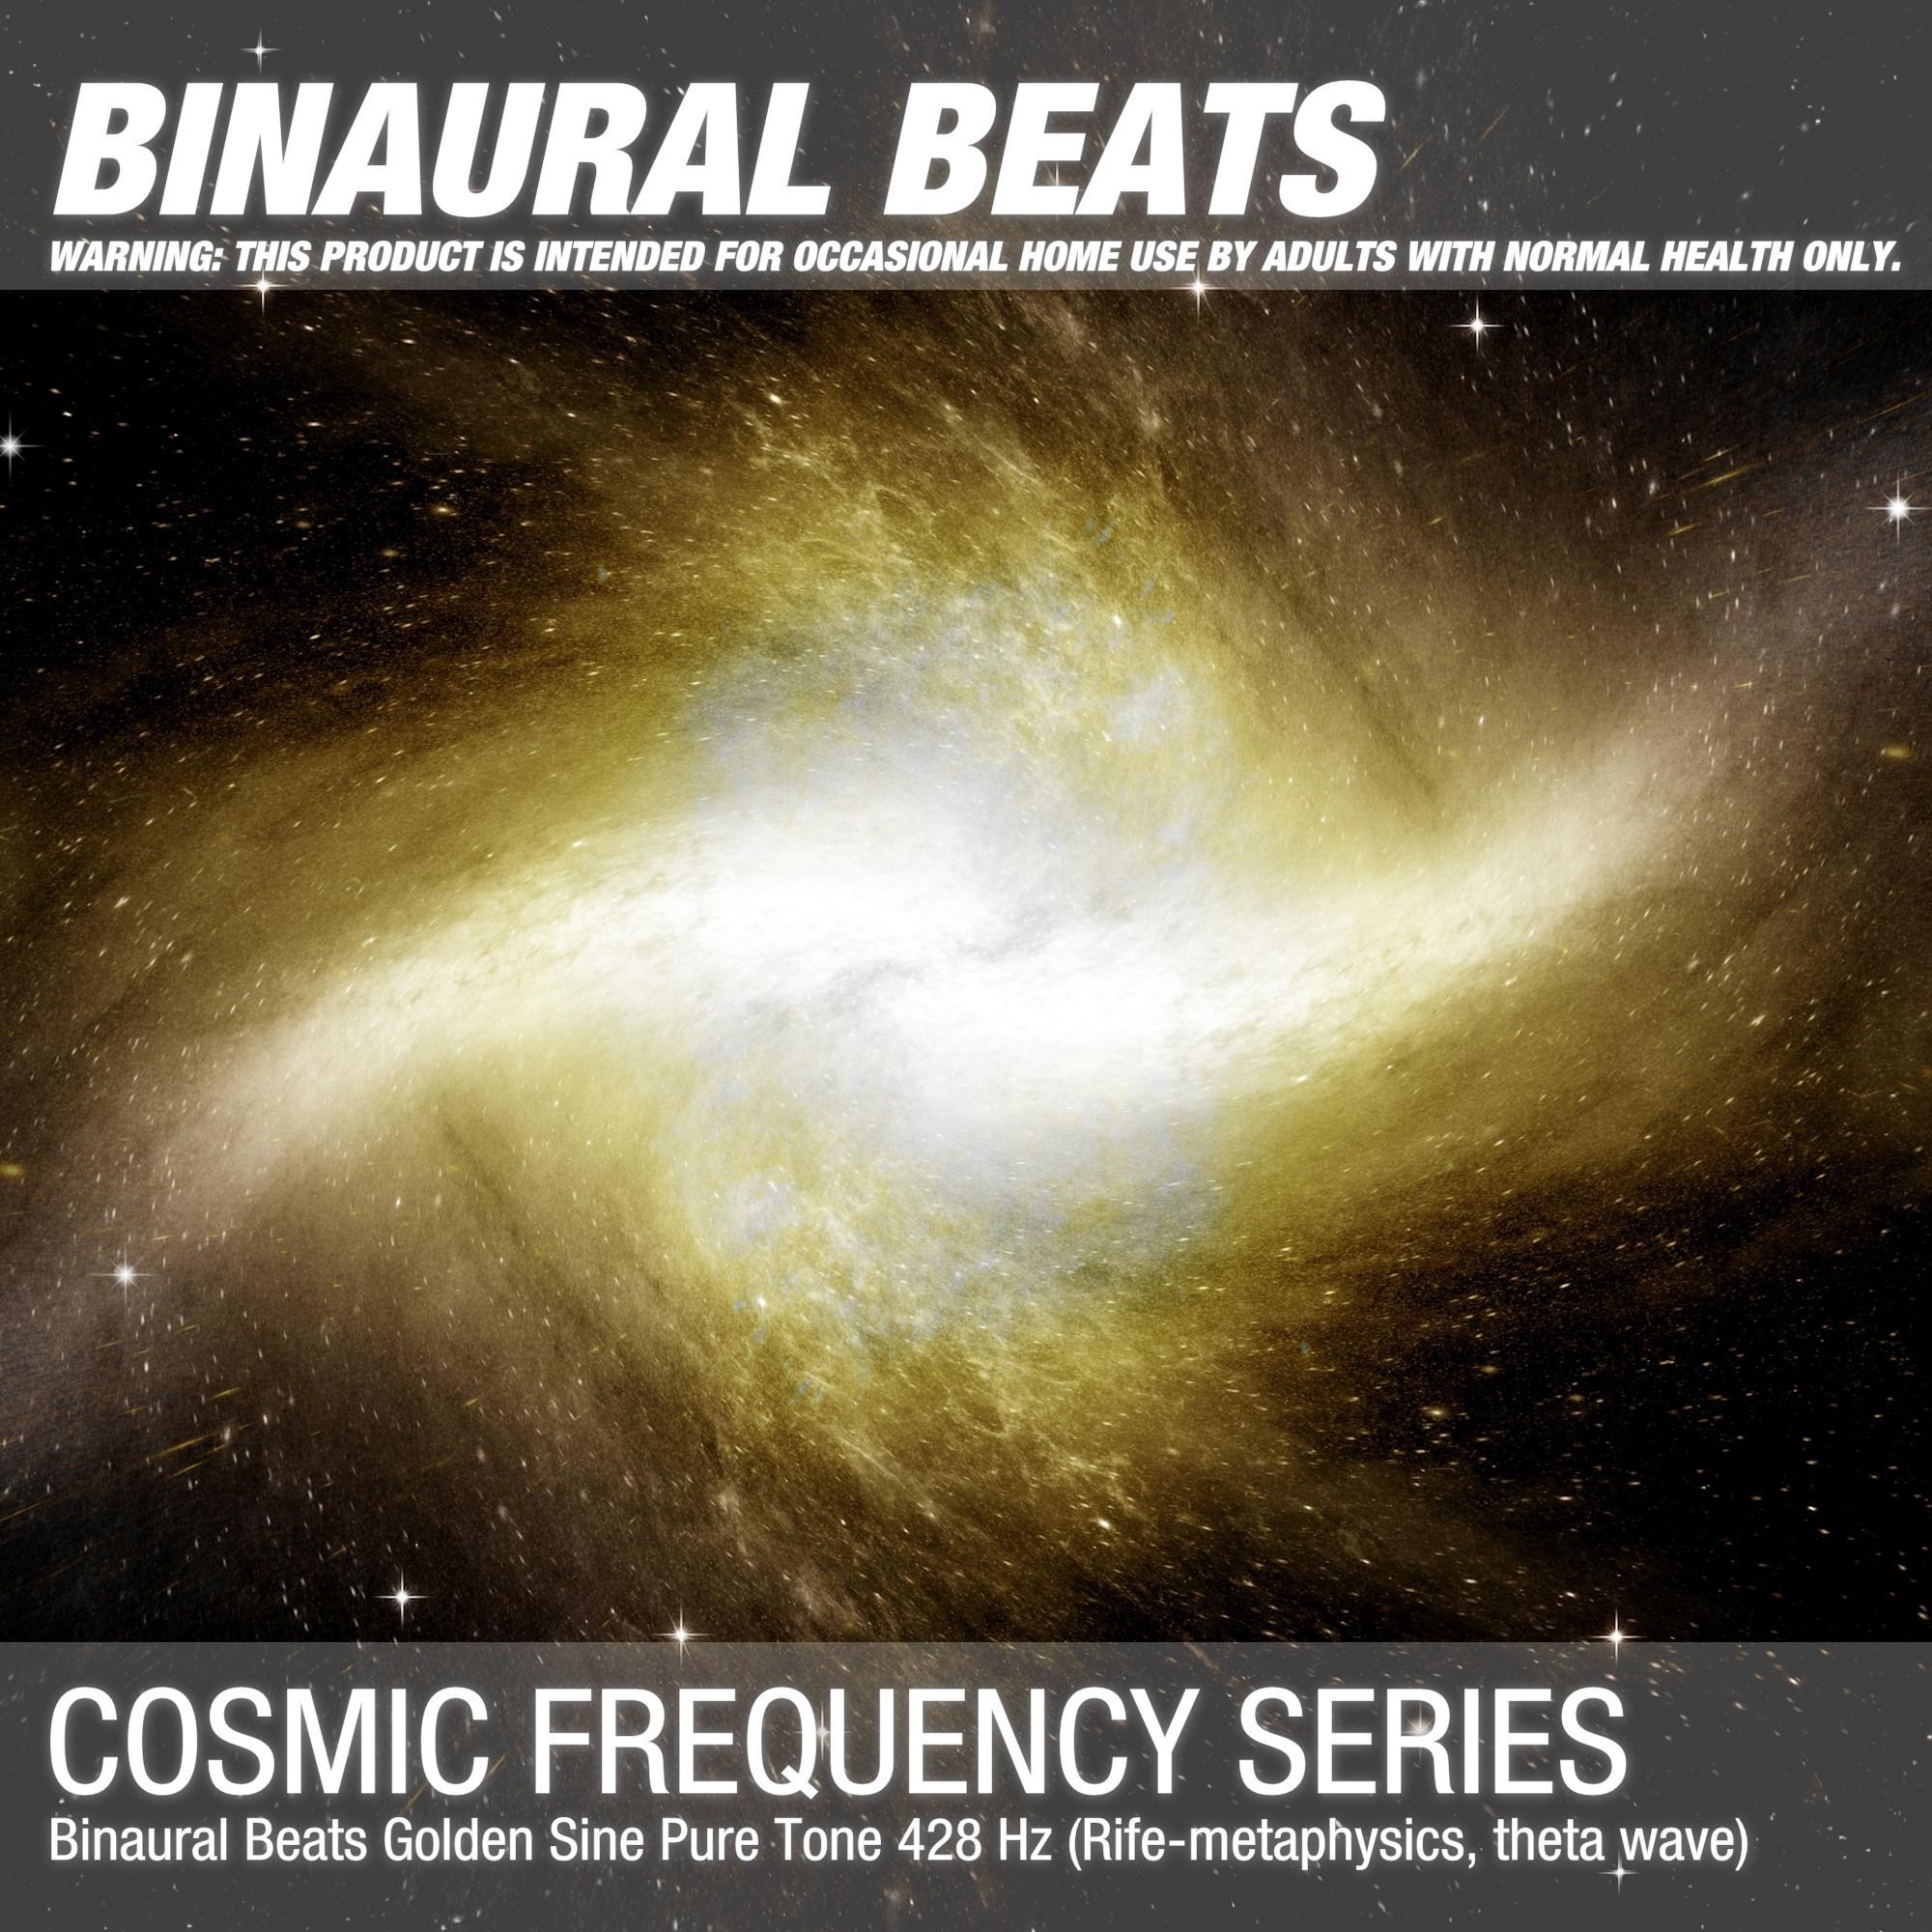 Binaural Beats Golden Sine Pure Tone 428 Hz (Rife-metaphysics, theta wave)